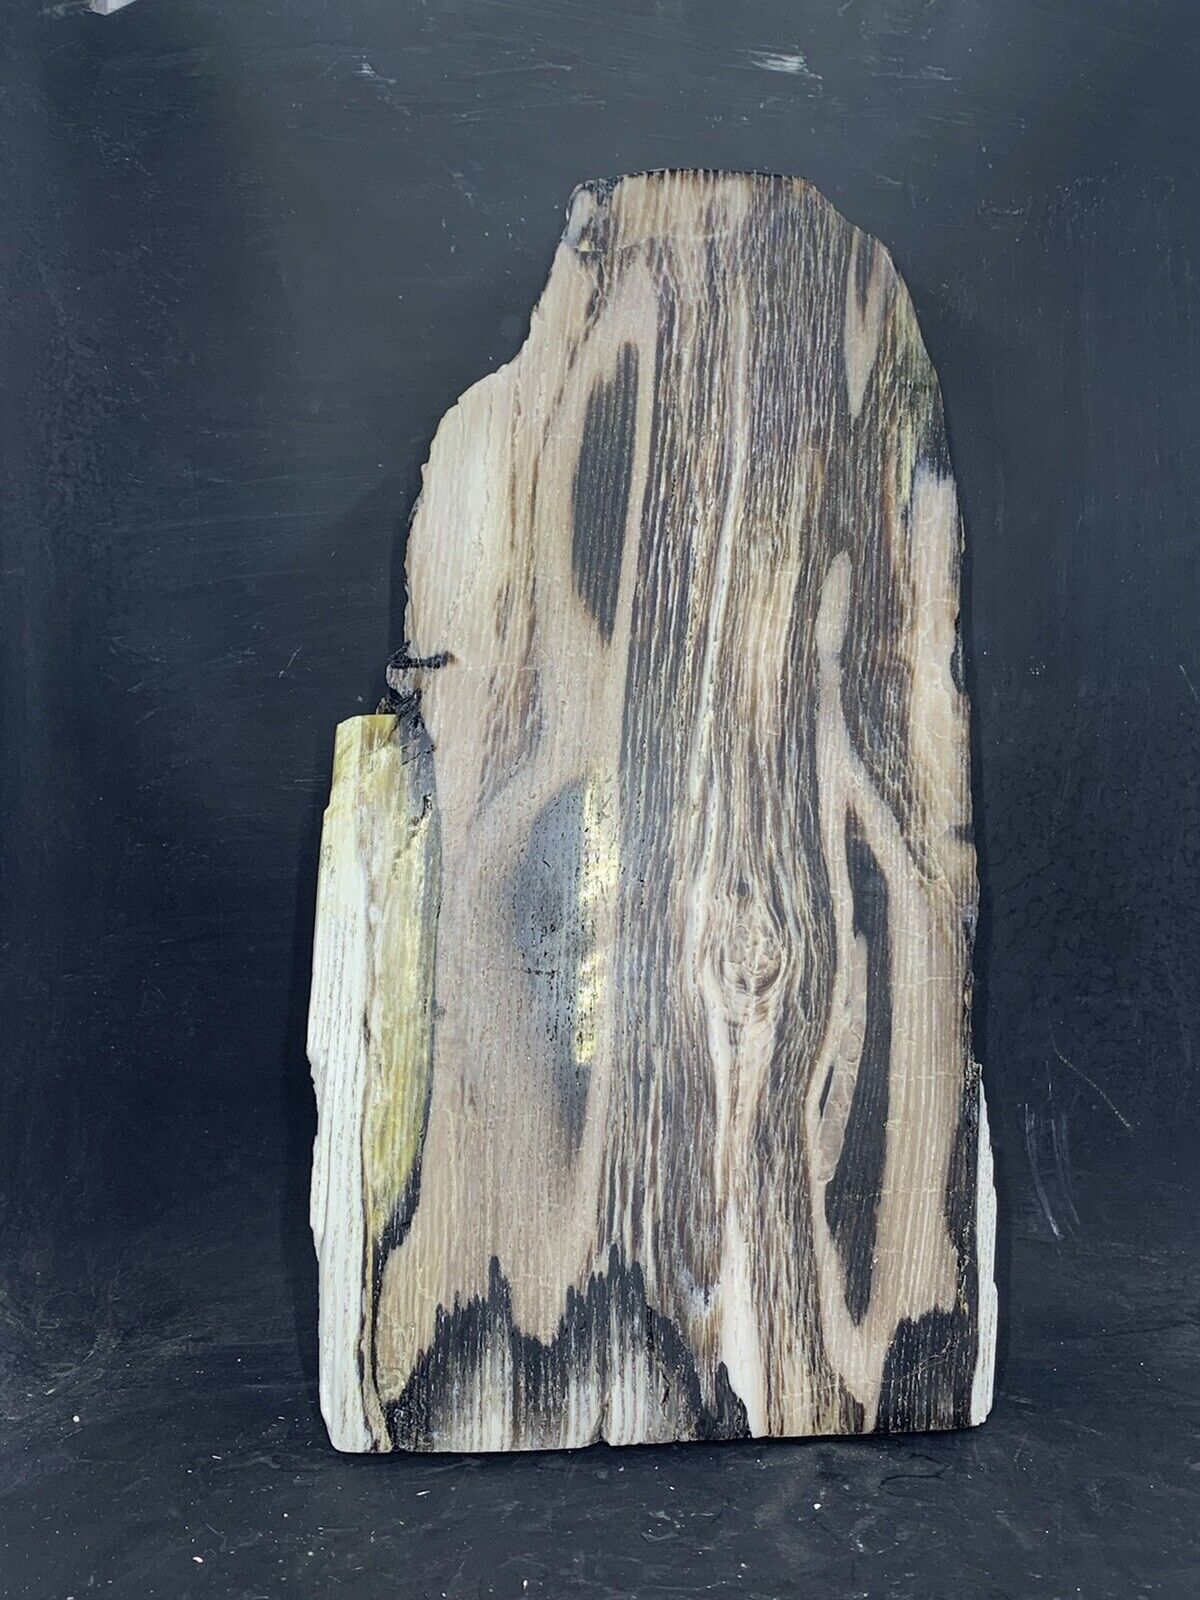 Petrified Wood, Opalized ( Utah ) Display Polished